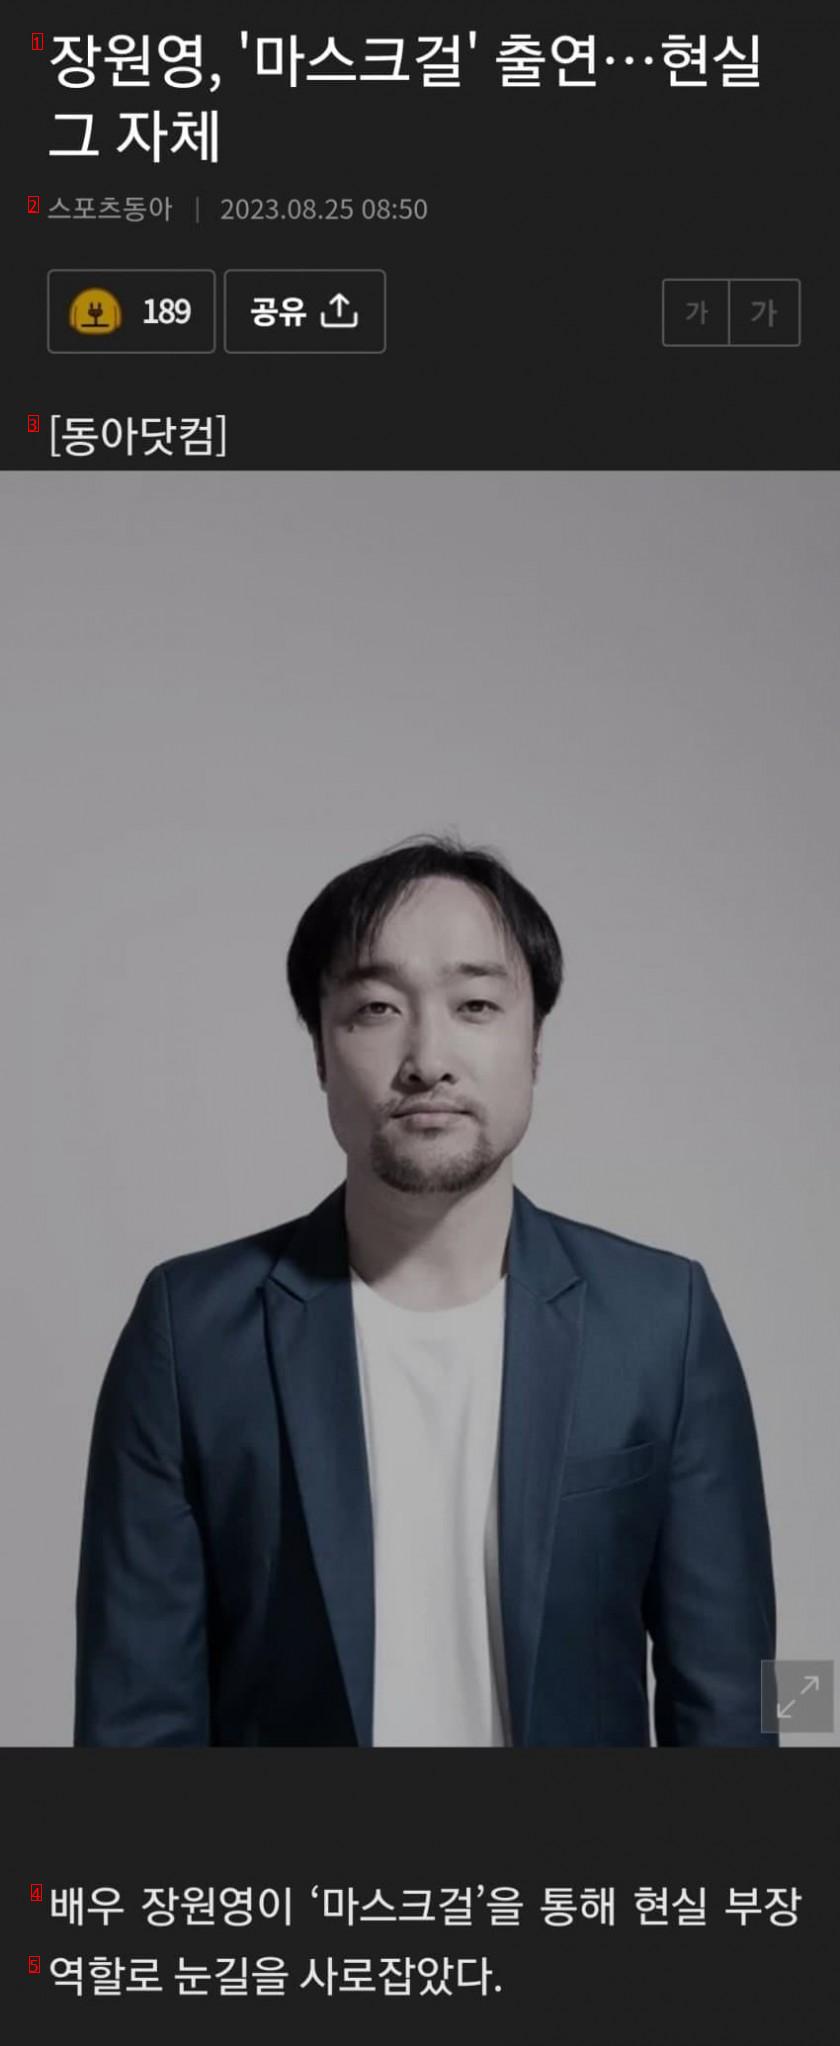 チャン·ウォニョン、マスクガール出演JPG